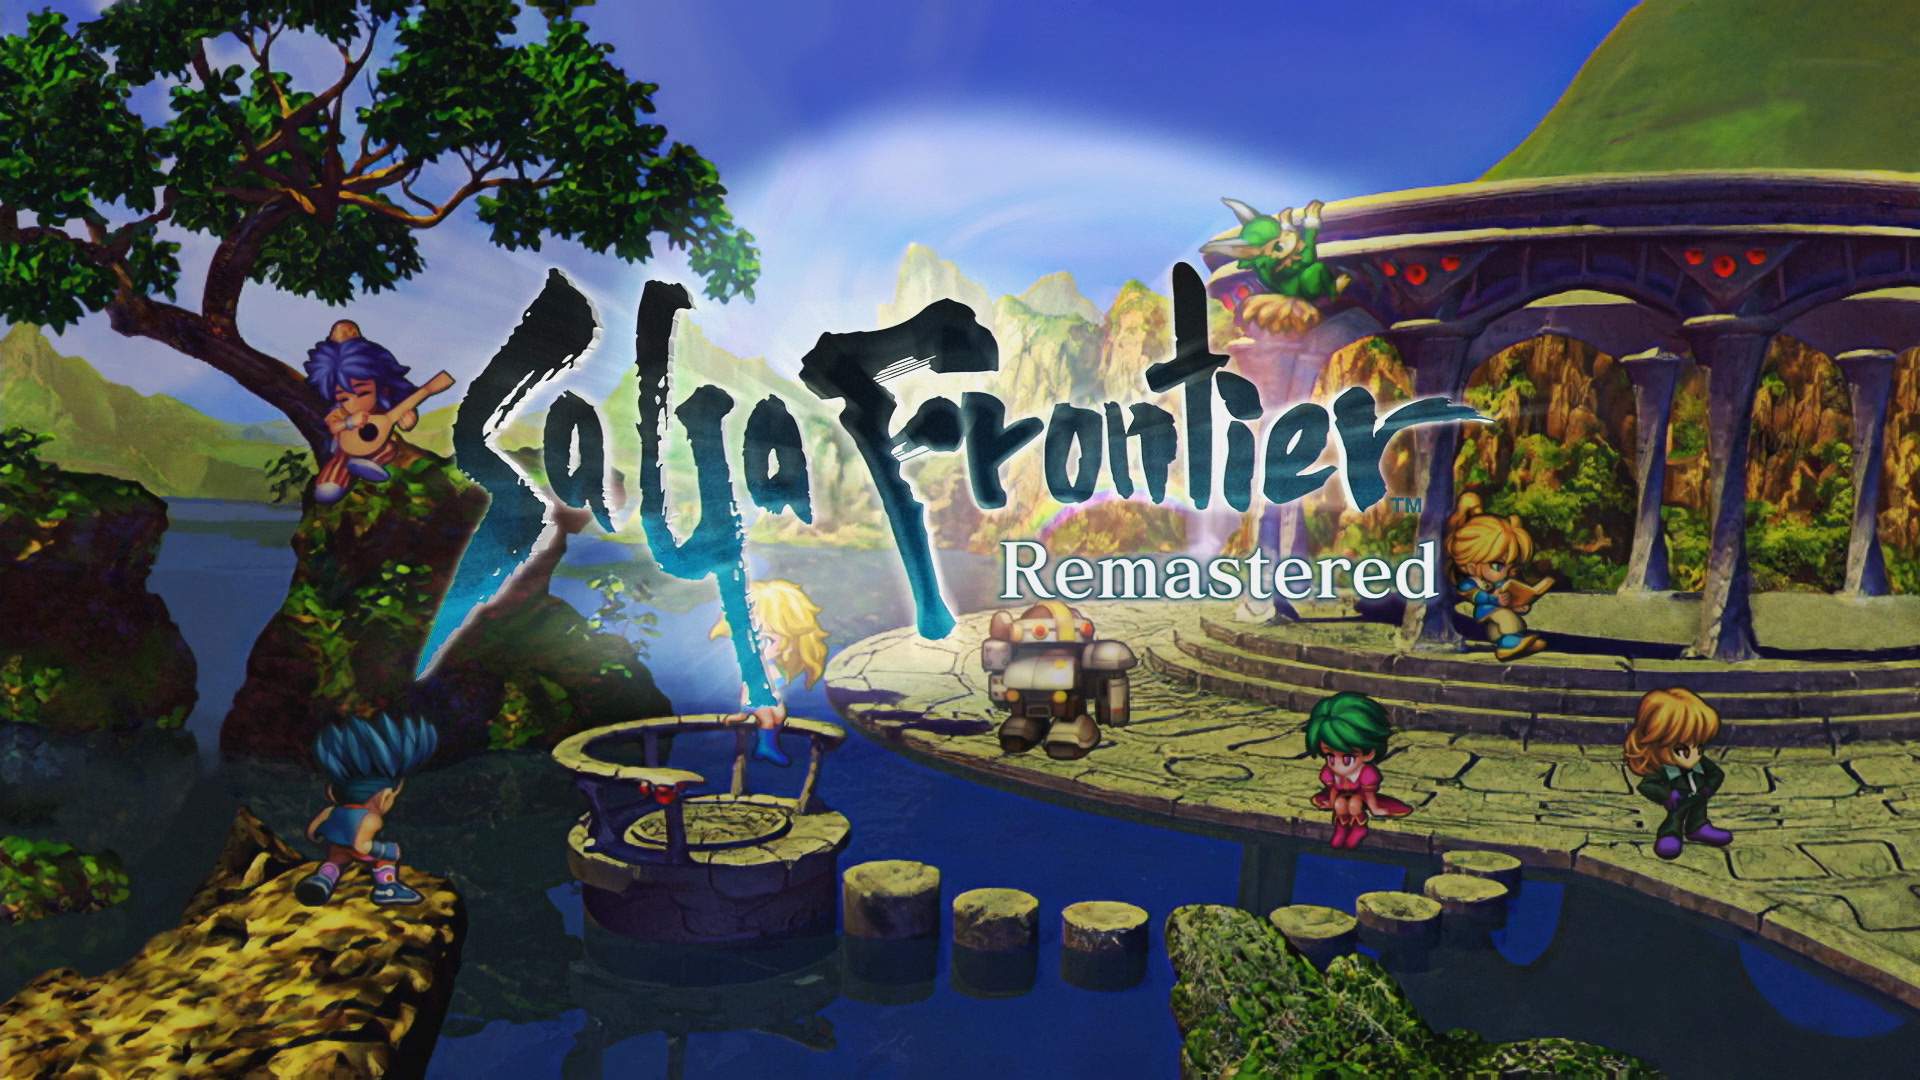 Alle acht Protagonisten aus SaGa Frontier Remastered an einem See versammelt. In der Bildmitte steht das Logo des Spiels.